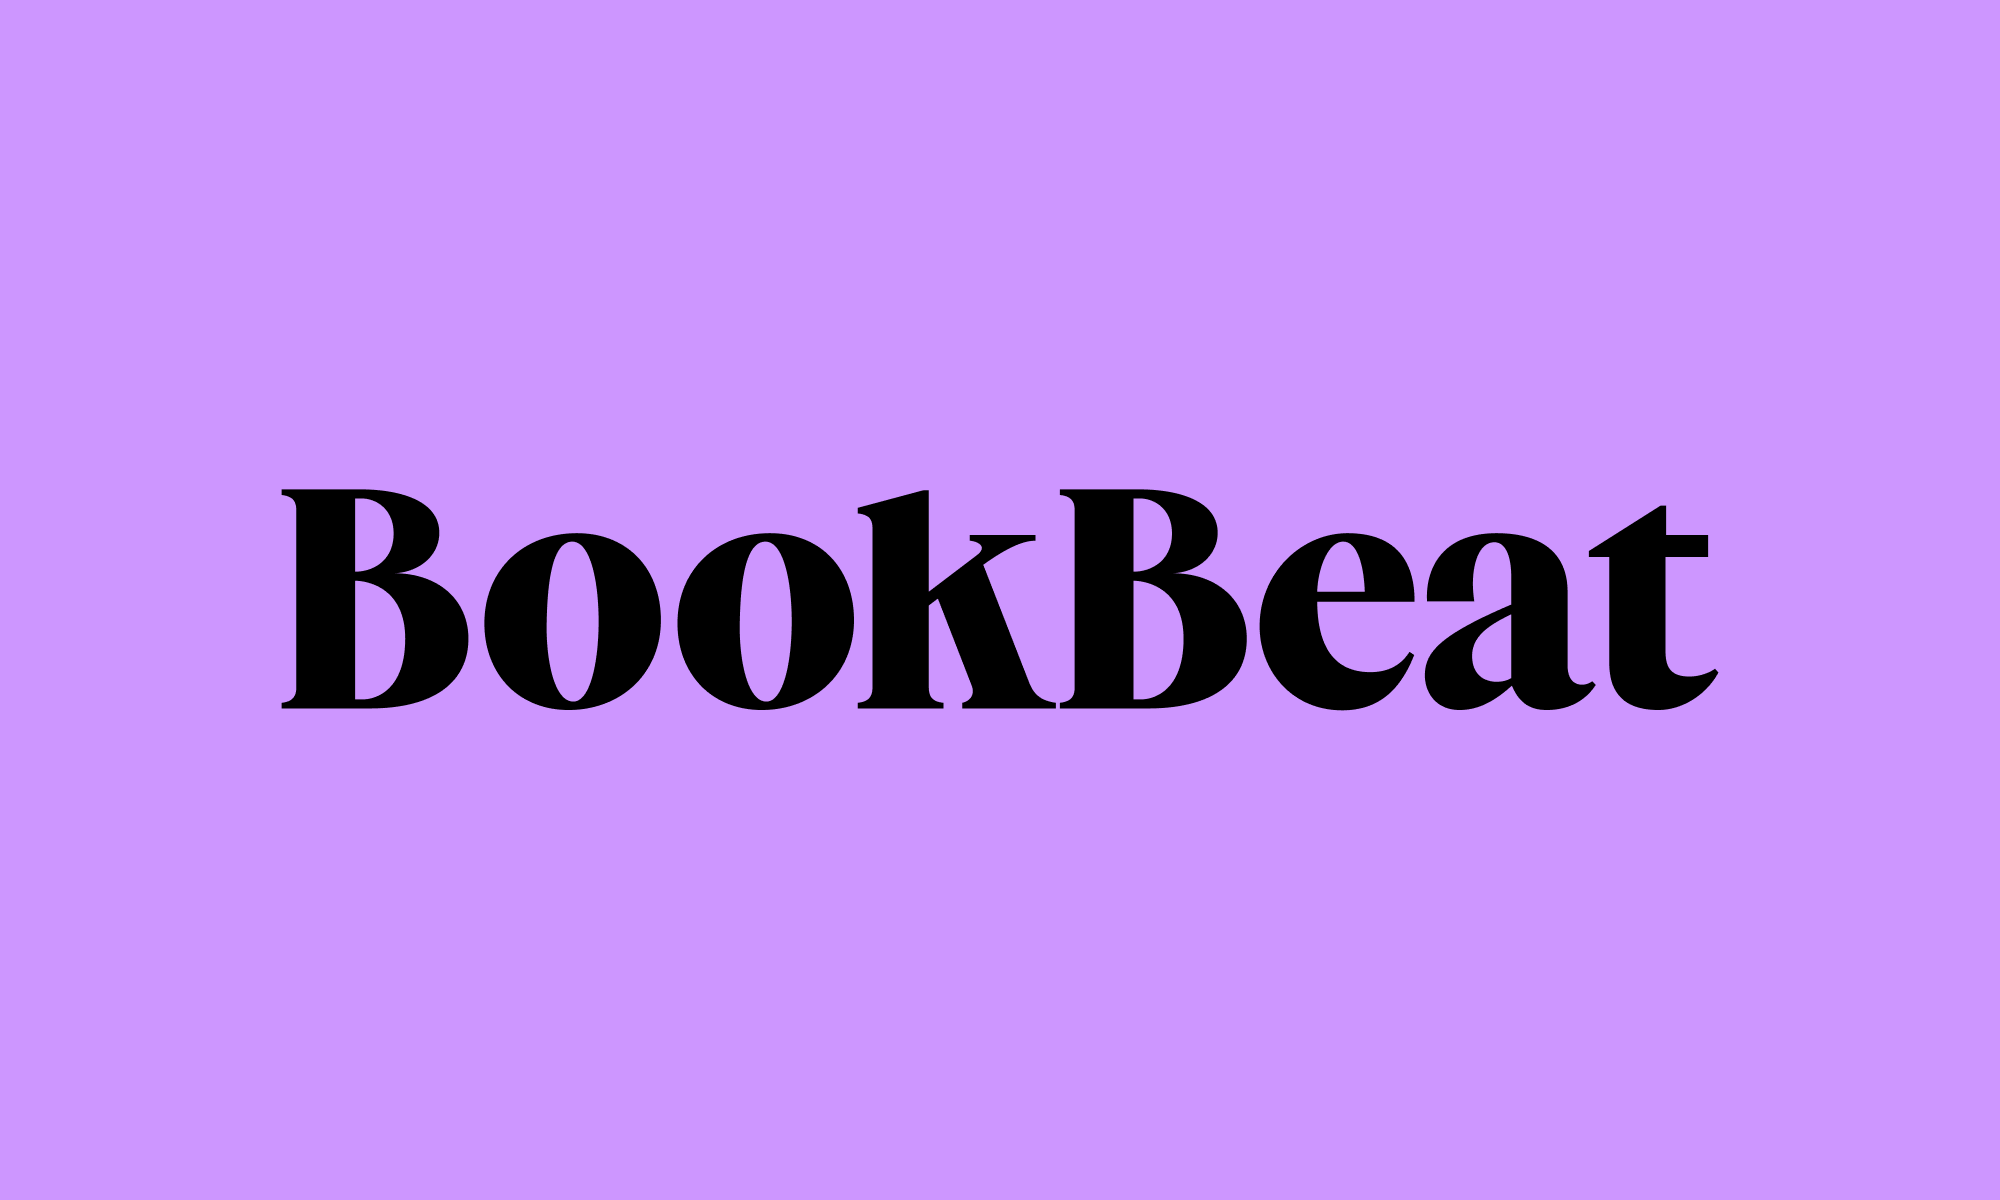 BookBeat - Hörbücher und E-Books direkt auf dem Handy. Teste gratis!